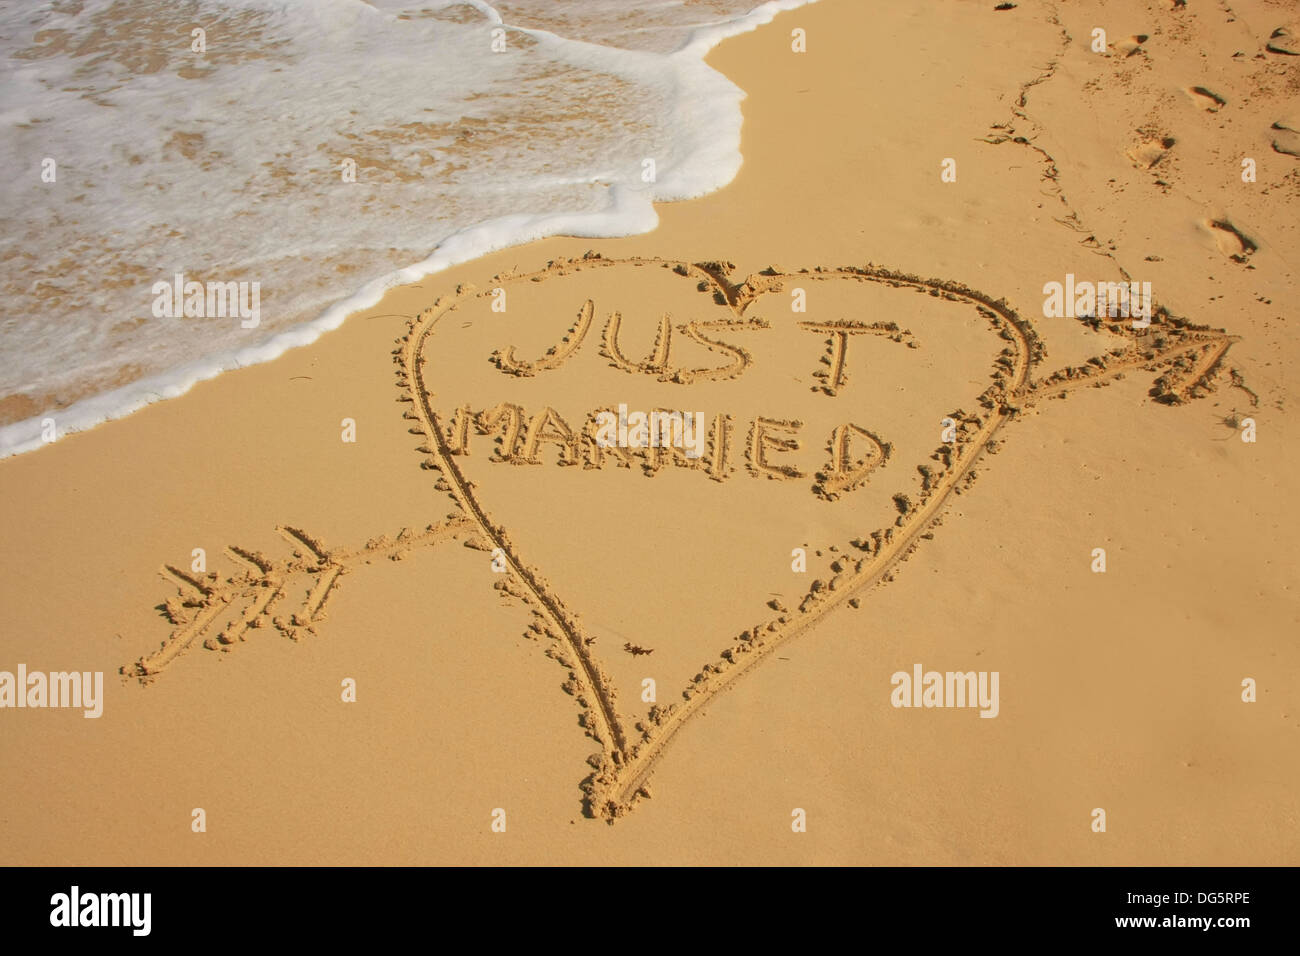 "Appena sposato' scritto nella sabbia sulla spiaggia Foto Stock